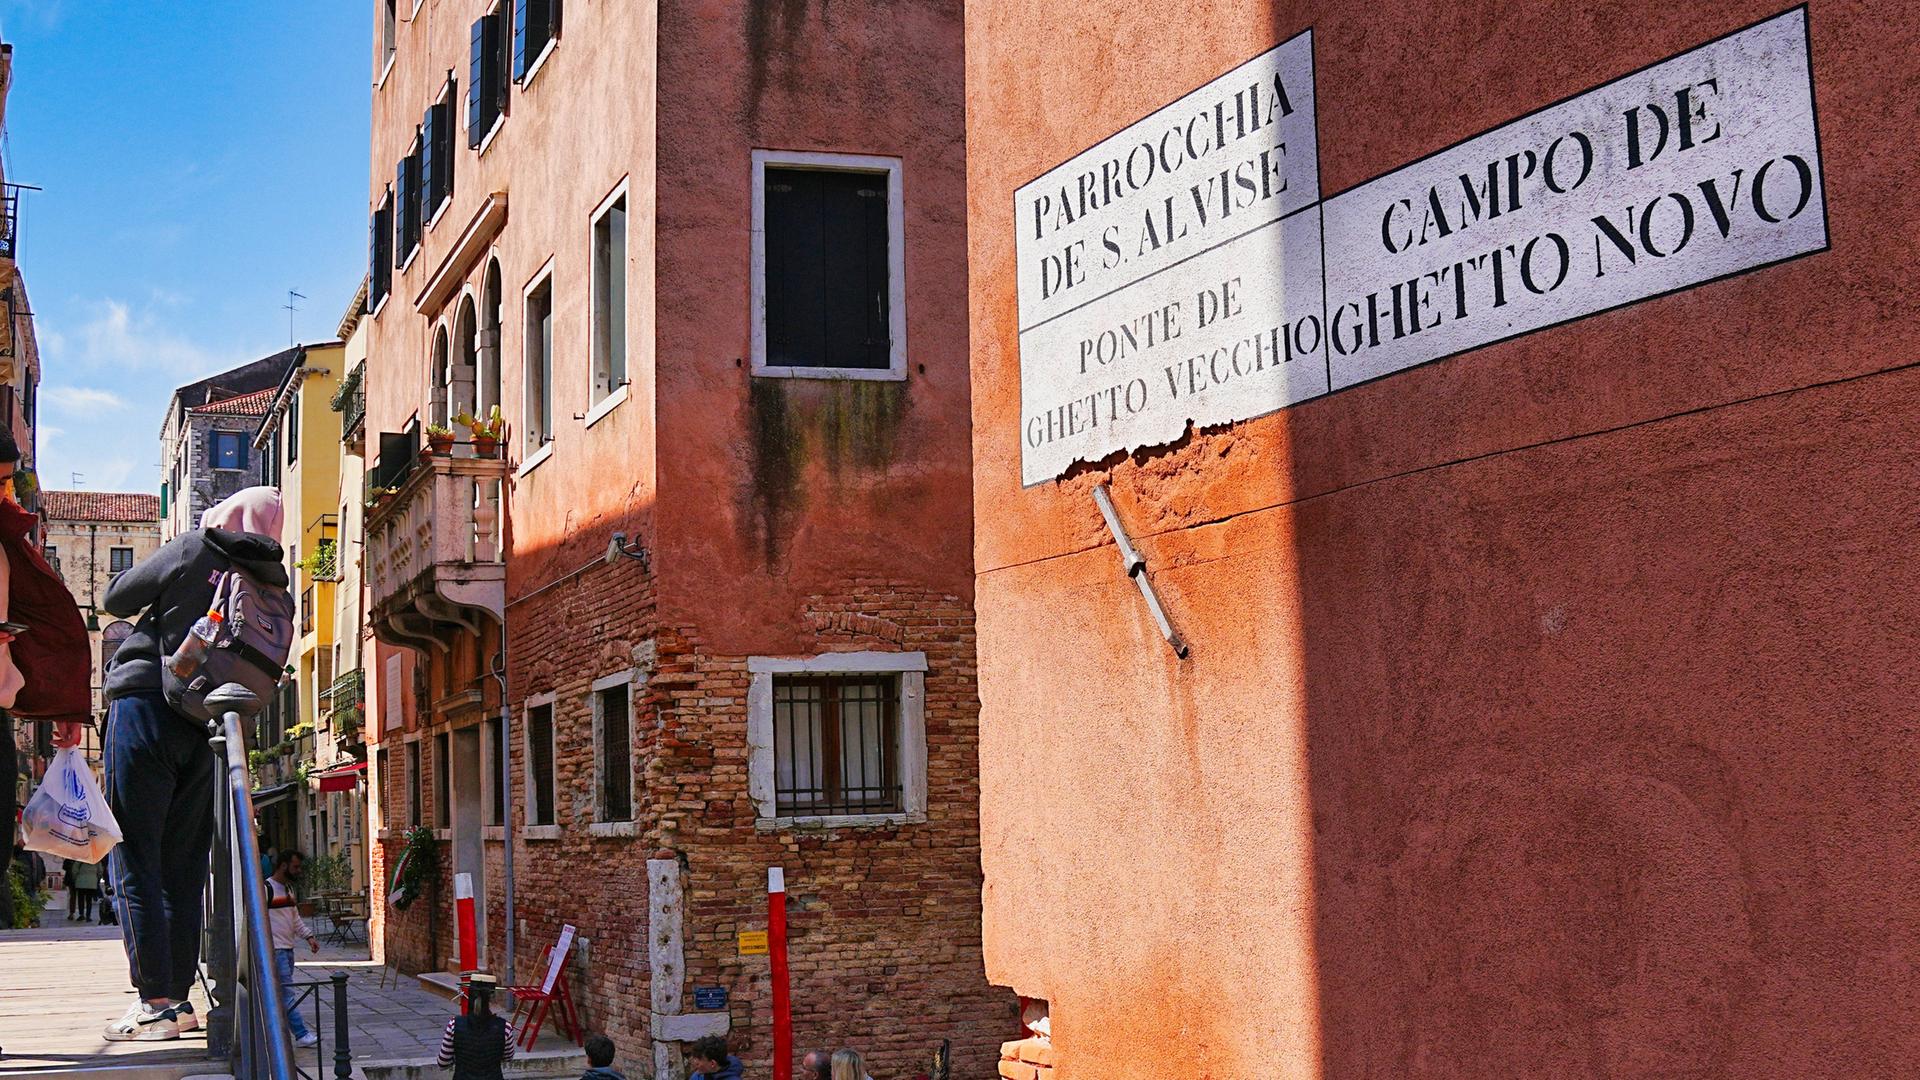 Ghetto Nuovo Venedig / Cannaregio Das Ghetto in Venedig liegt im Stadtteil Cannaregio. Es war seit dem 16. Jahrhundert bis zu seiner Aufhebung 1796 unter Napoleon das abgeschlossene Wohngebiet für die jüdische Bevölkerung in Venedig. Es ist damit Namensgeberin aller Ghettos dieser Epoche. Copyright: xZoonar.com/HGVorndranx 21618871